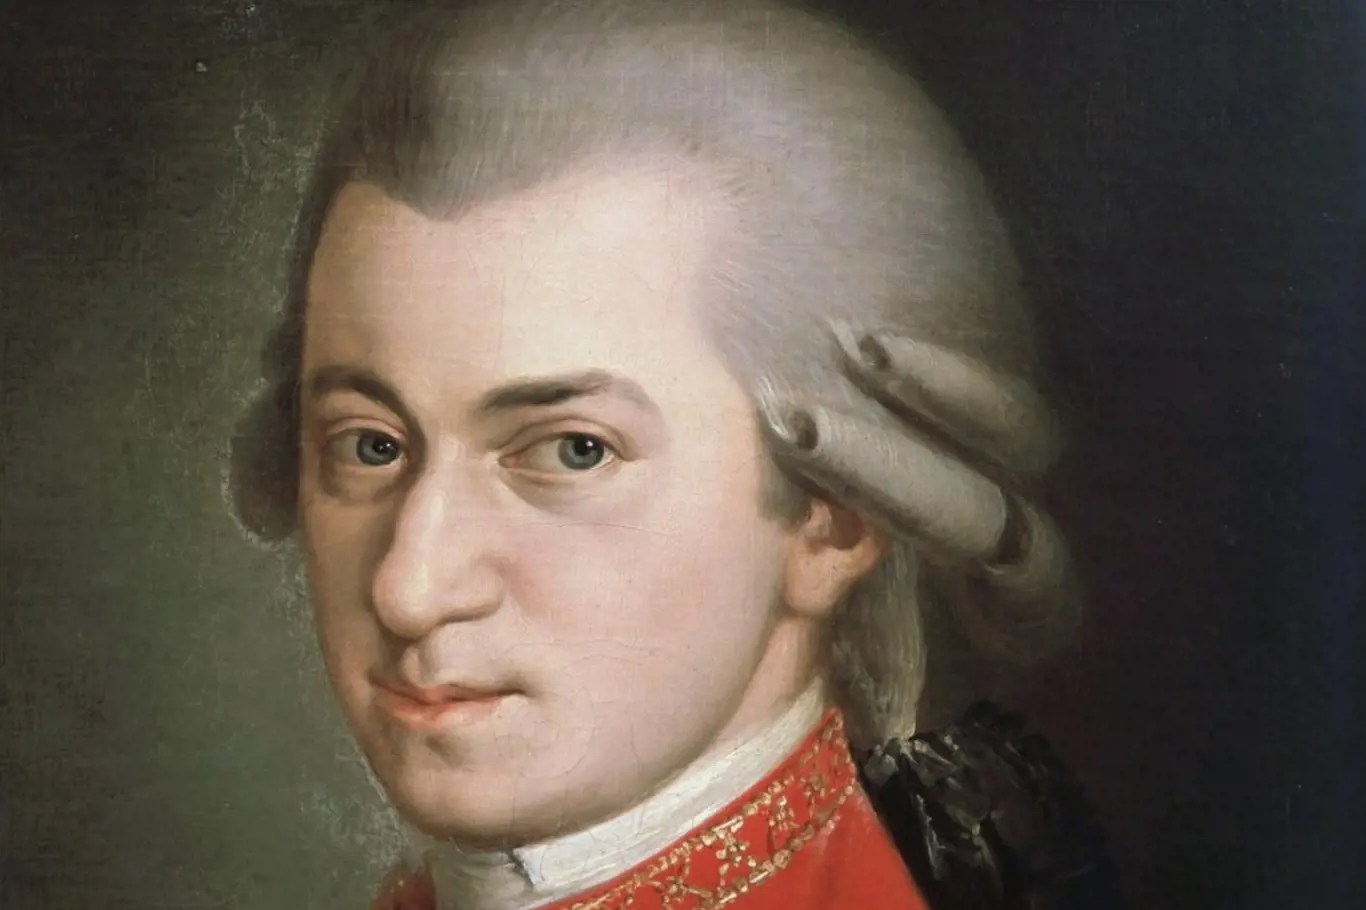 Mozart v Praze